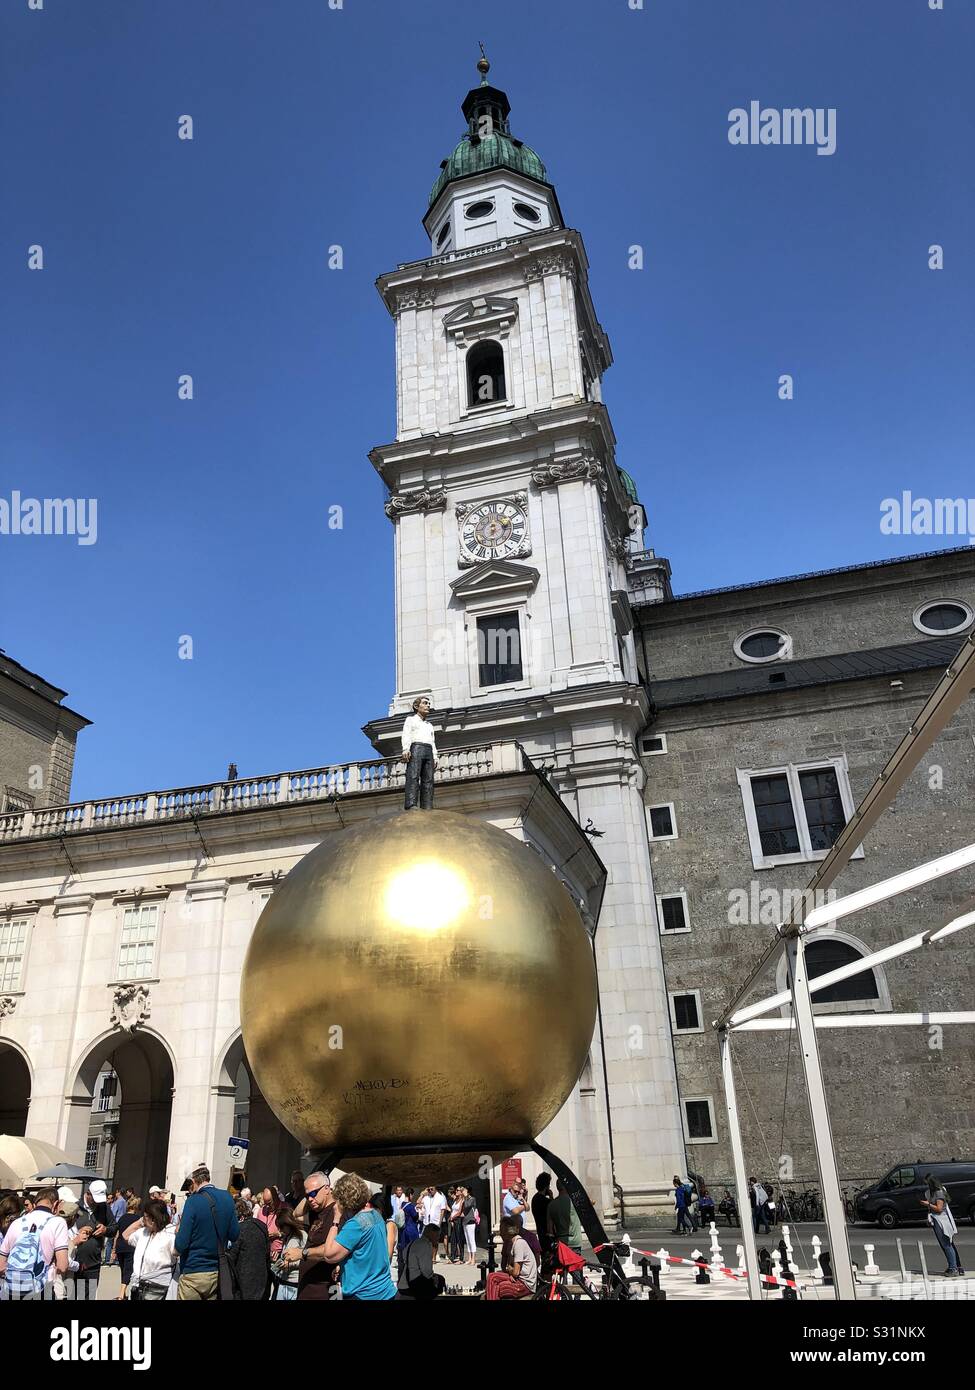 Mann auf einen Golden Globe Statue - "Walk of modern art" in Salzburg, Österreich. Stockfoto